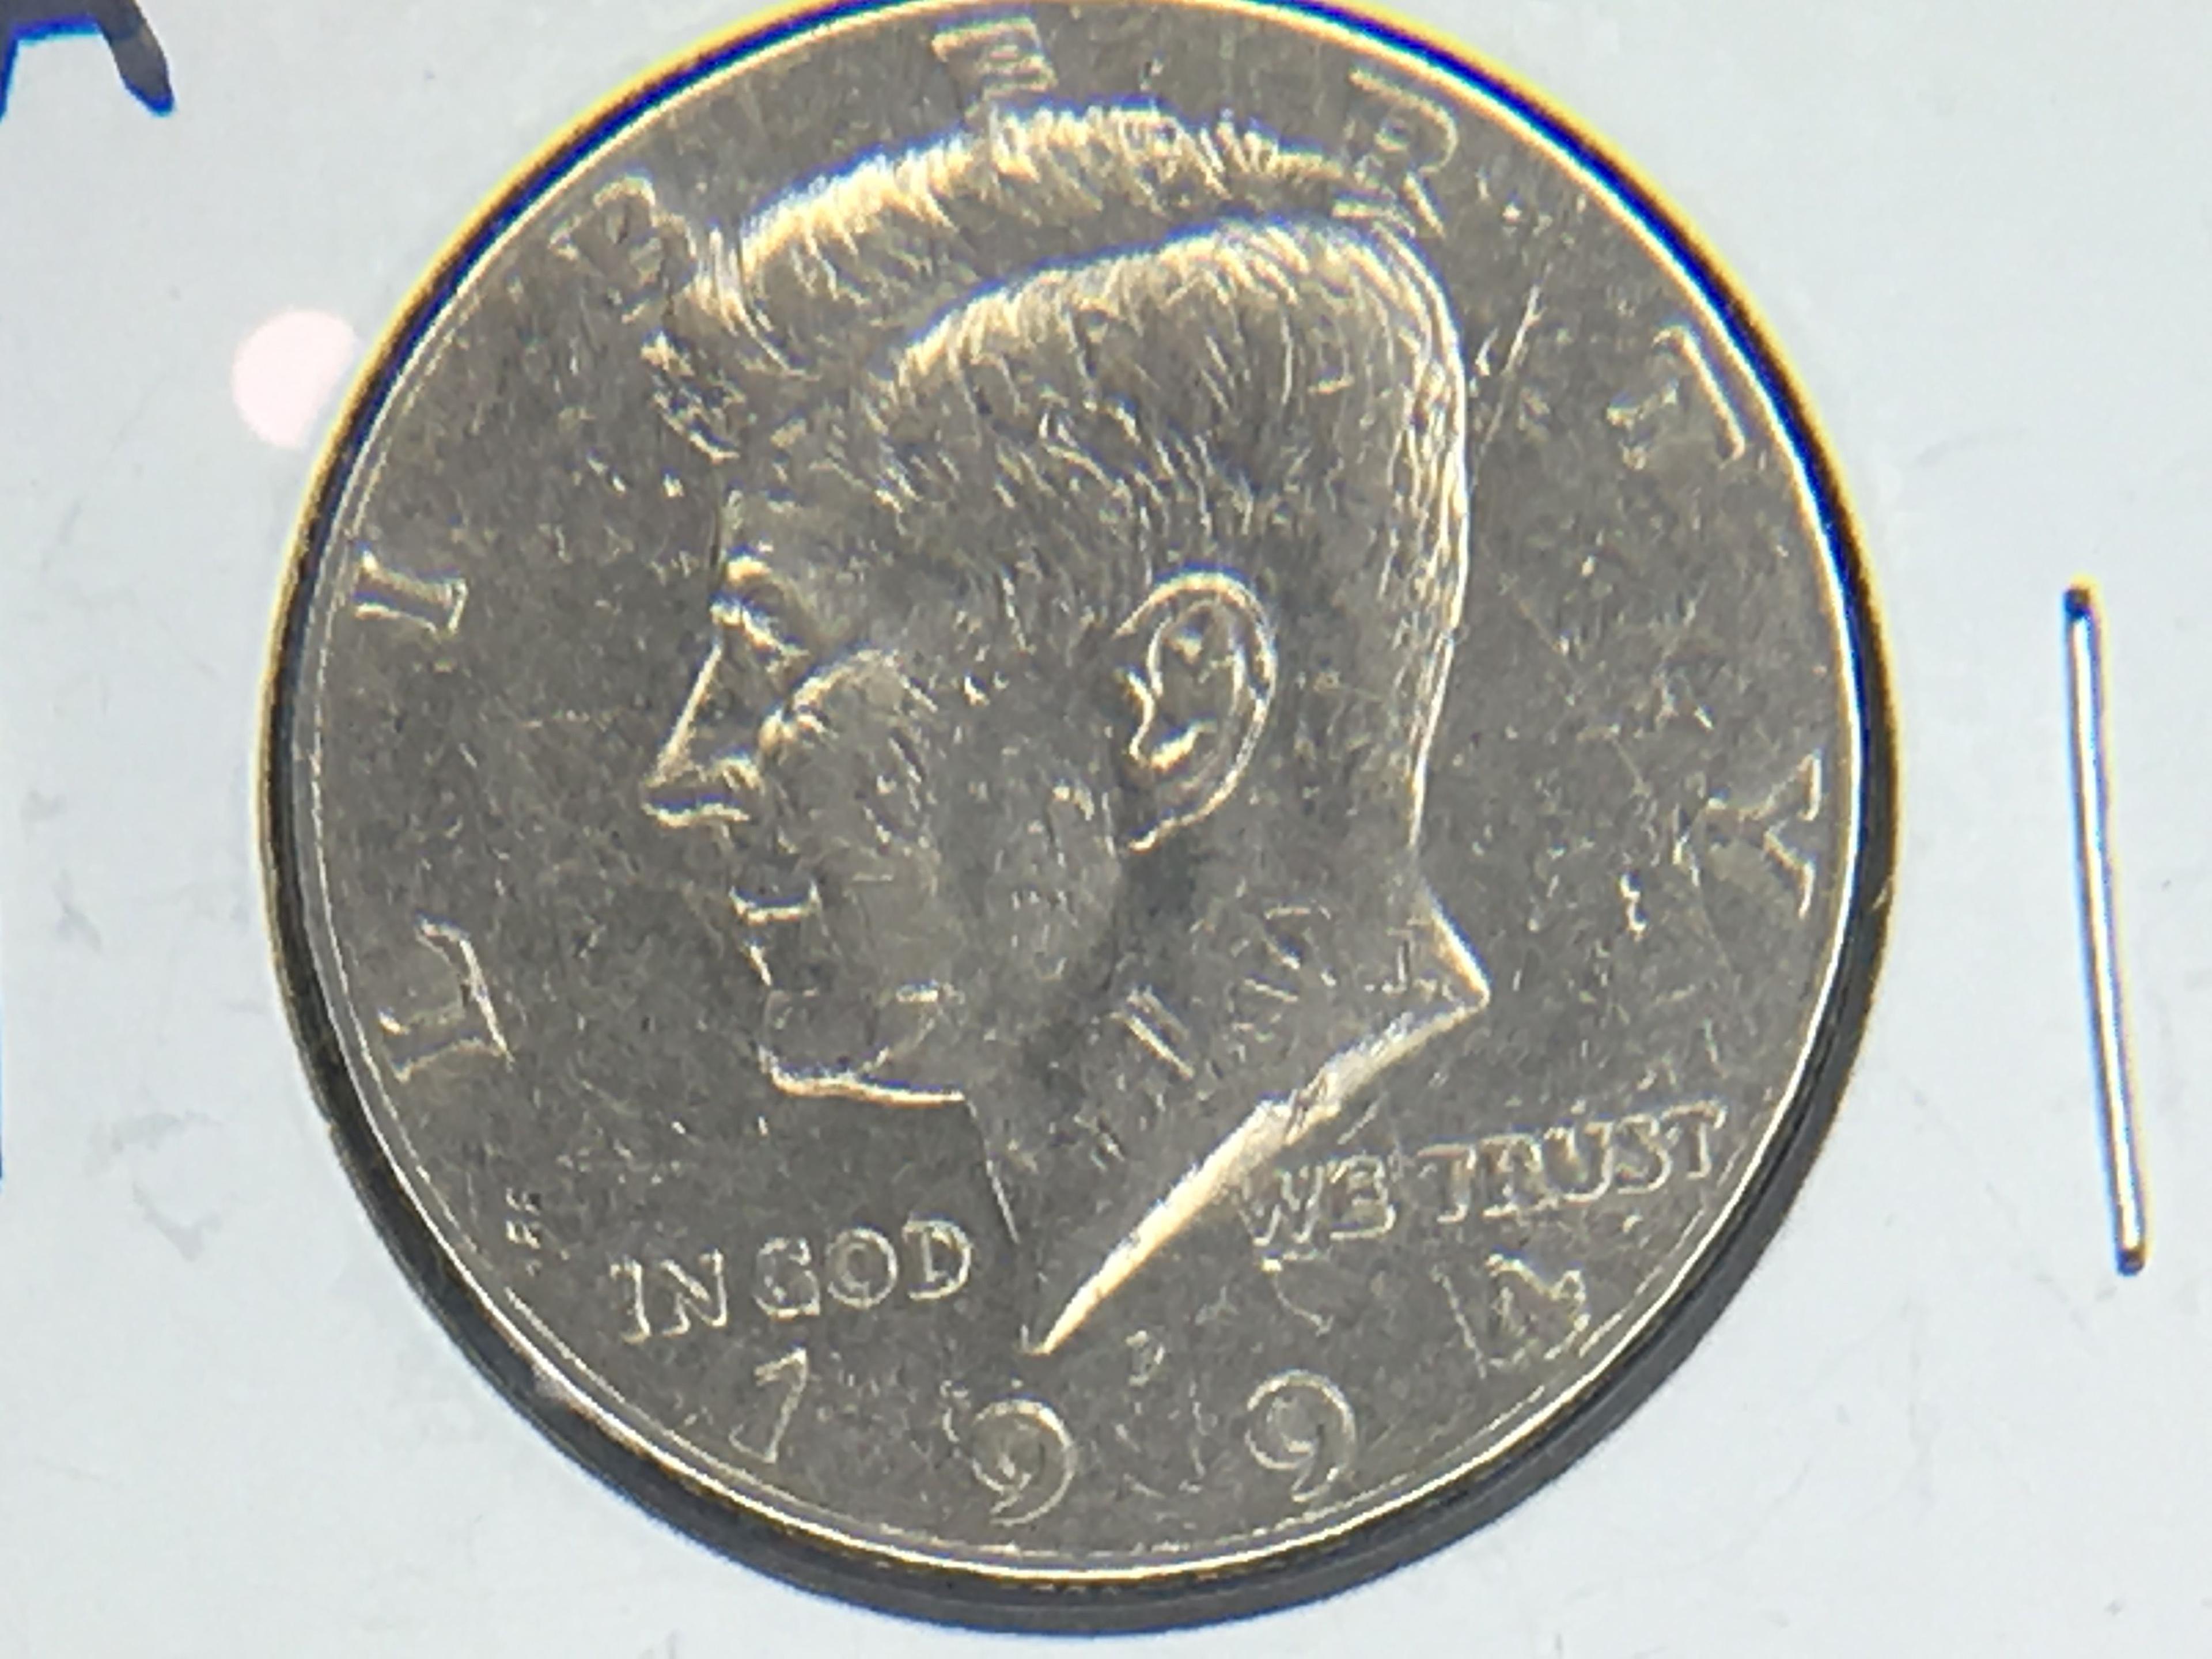 1776-1976 Kennedy Half Dollar, 1994 D Kennedy Half Dollar